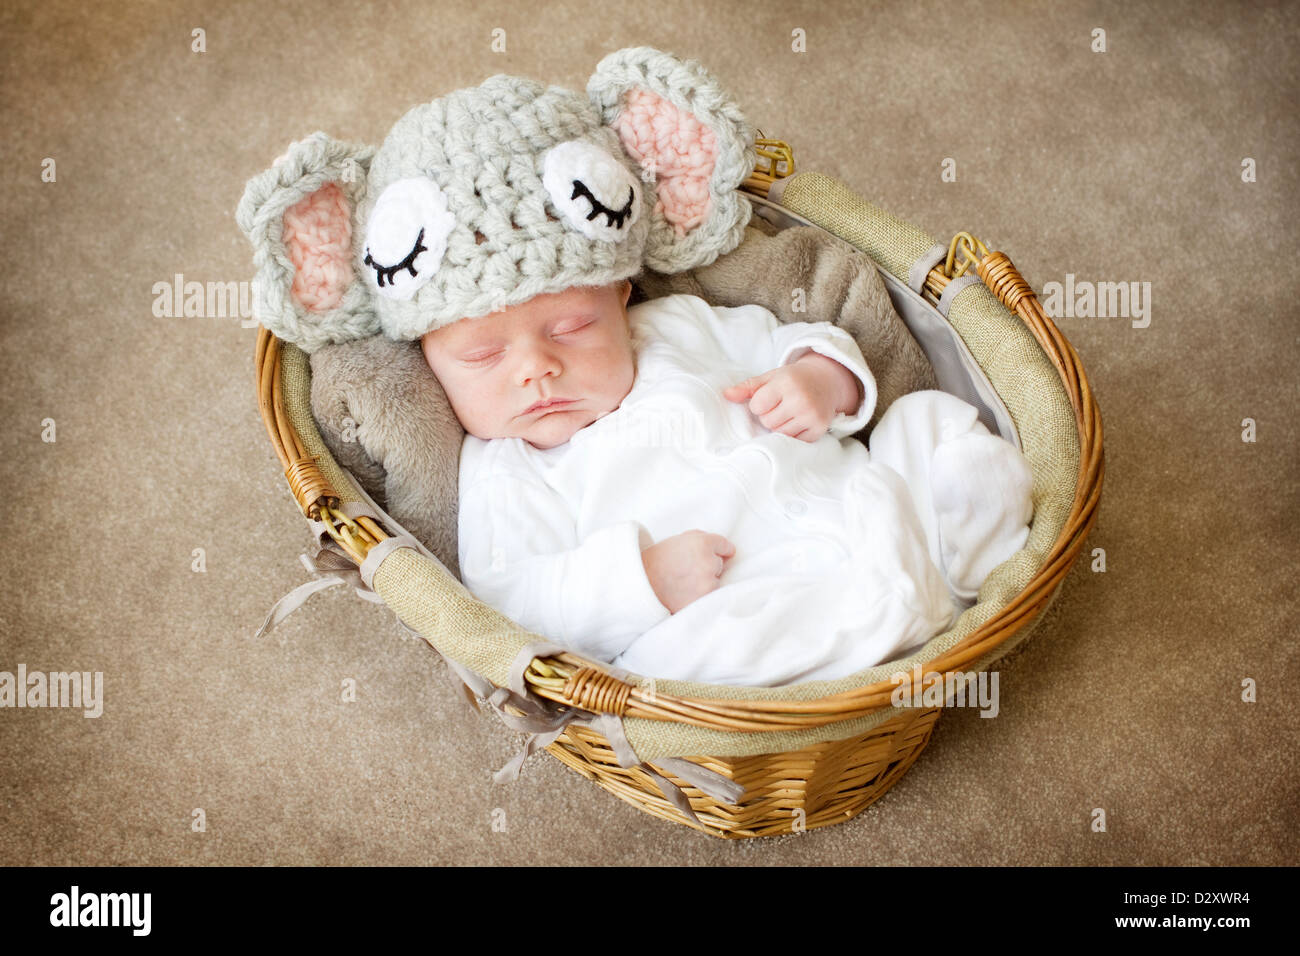 Very cute photograph of a newborn baby boy asleep in a basket. He ...